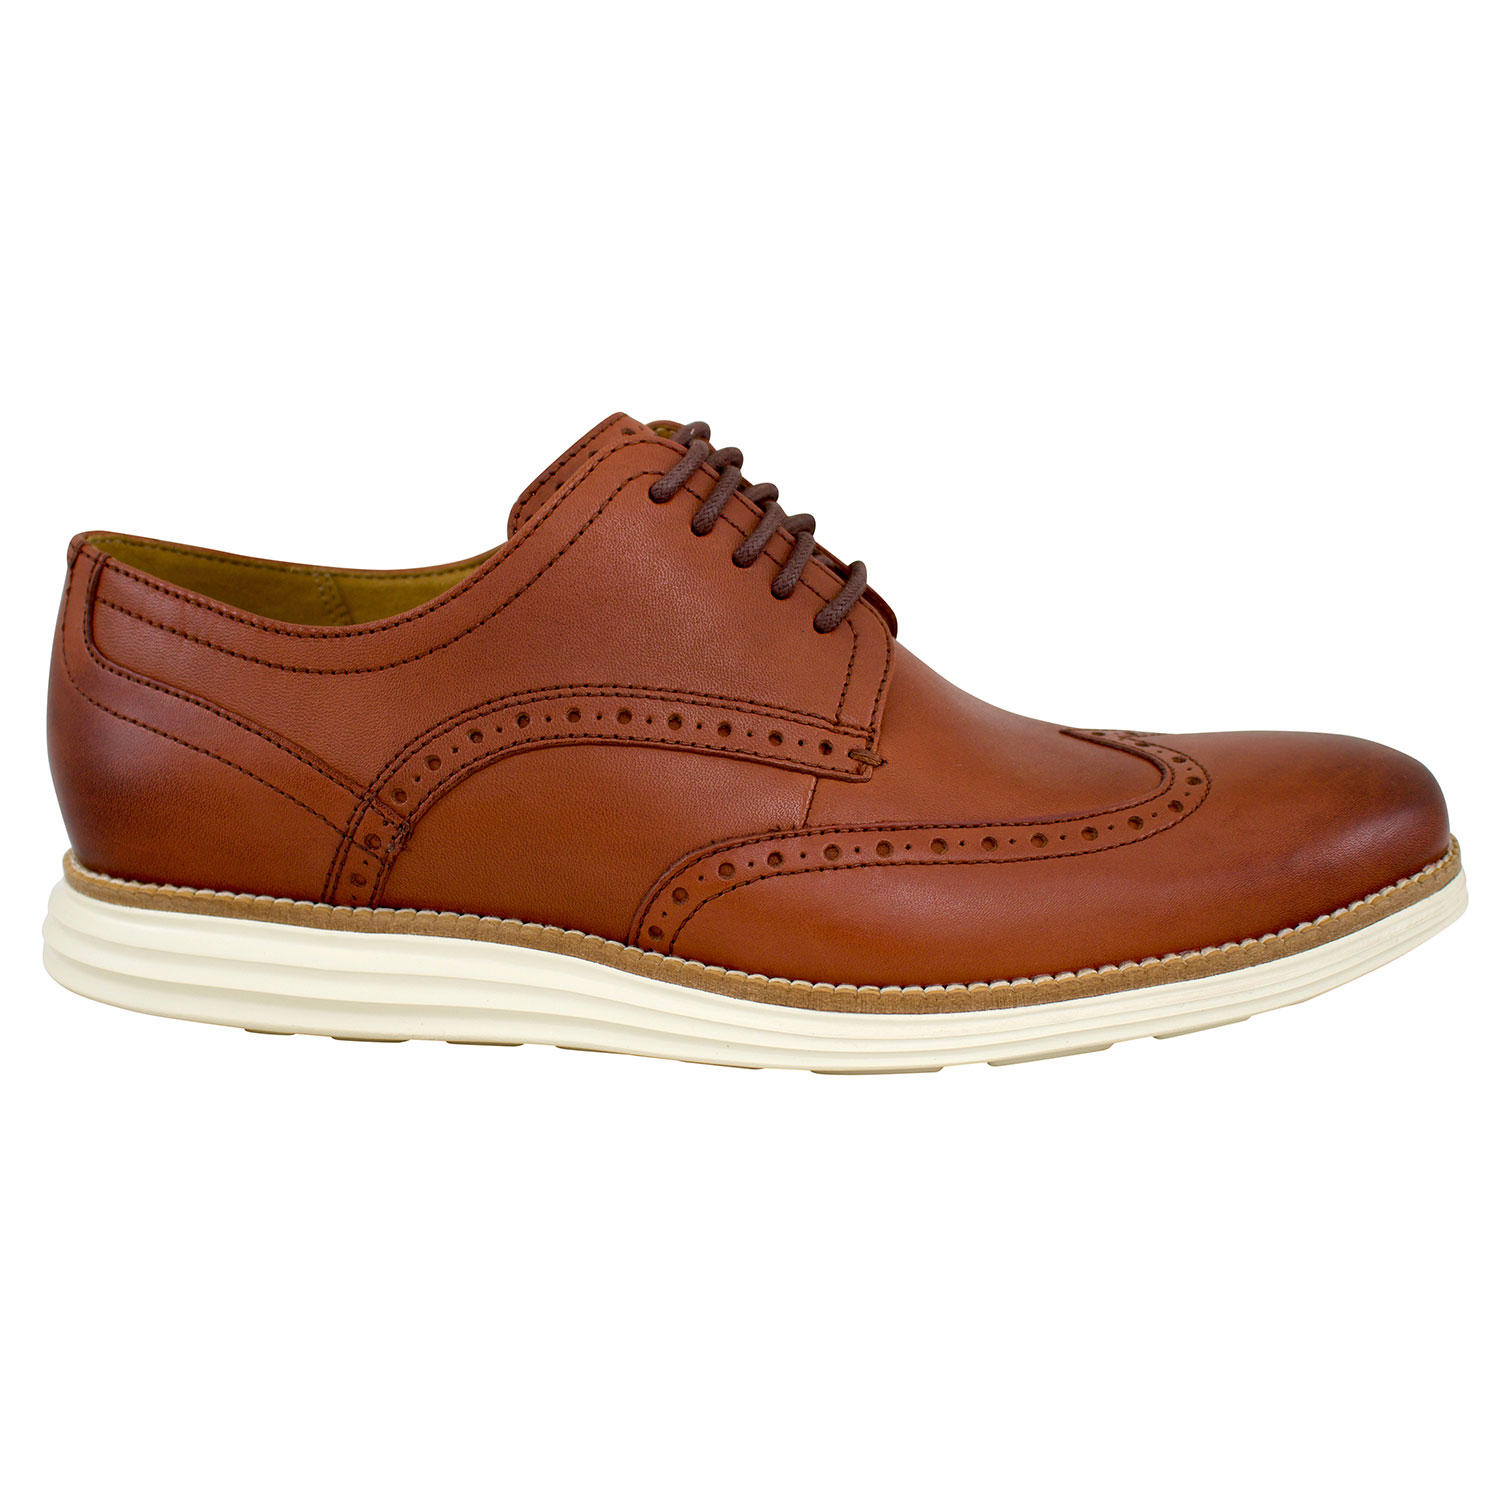 Sam's Club Members: Cole Haan Men's Original Grand Wingtip Oxford Shoe $39.8